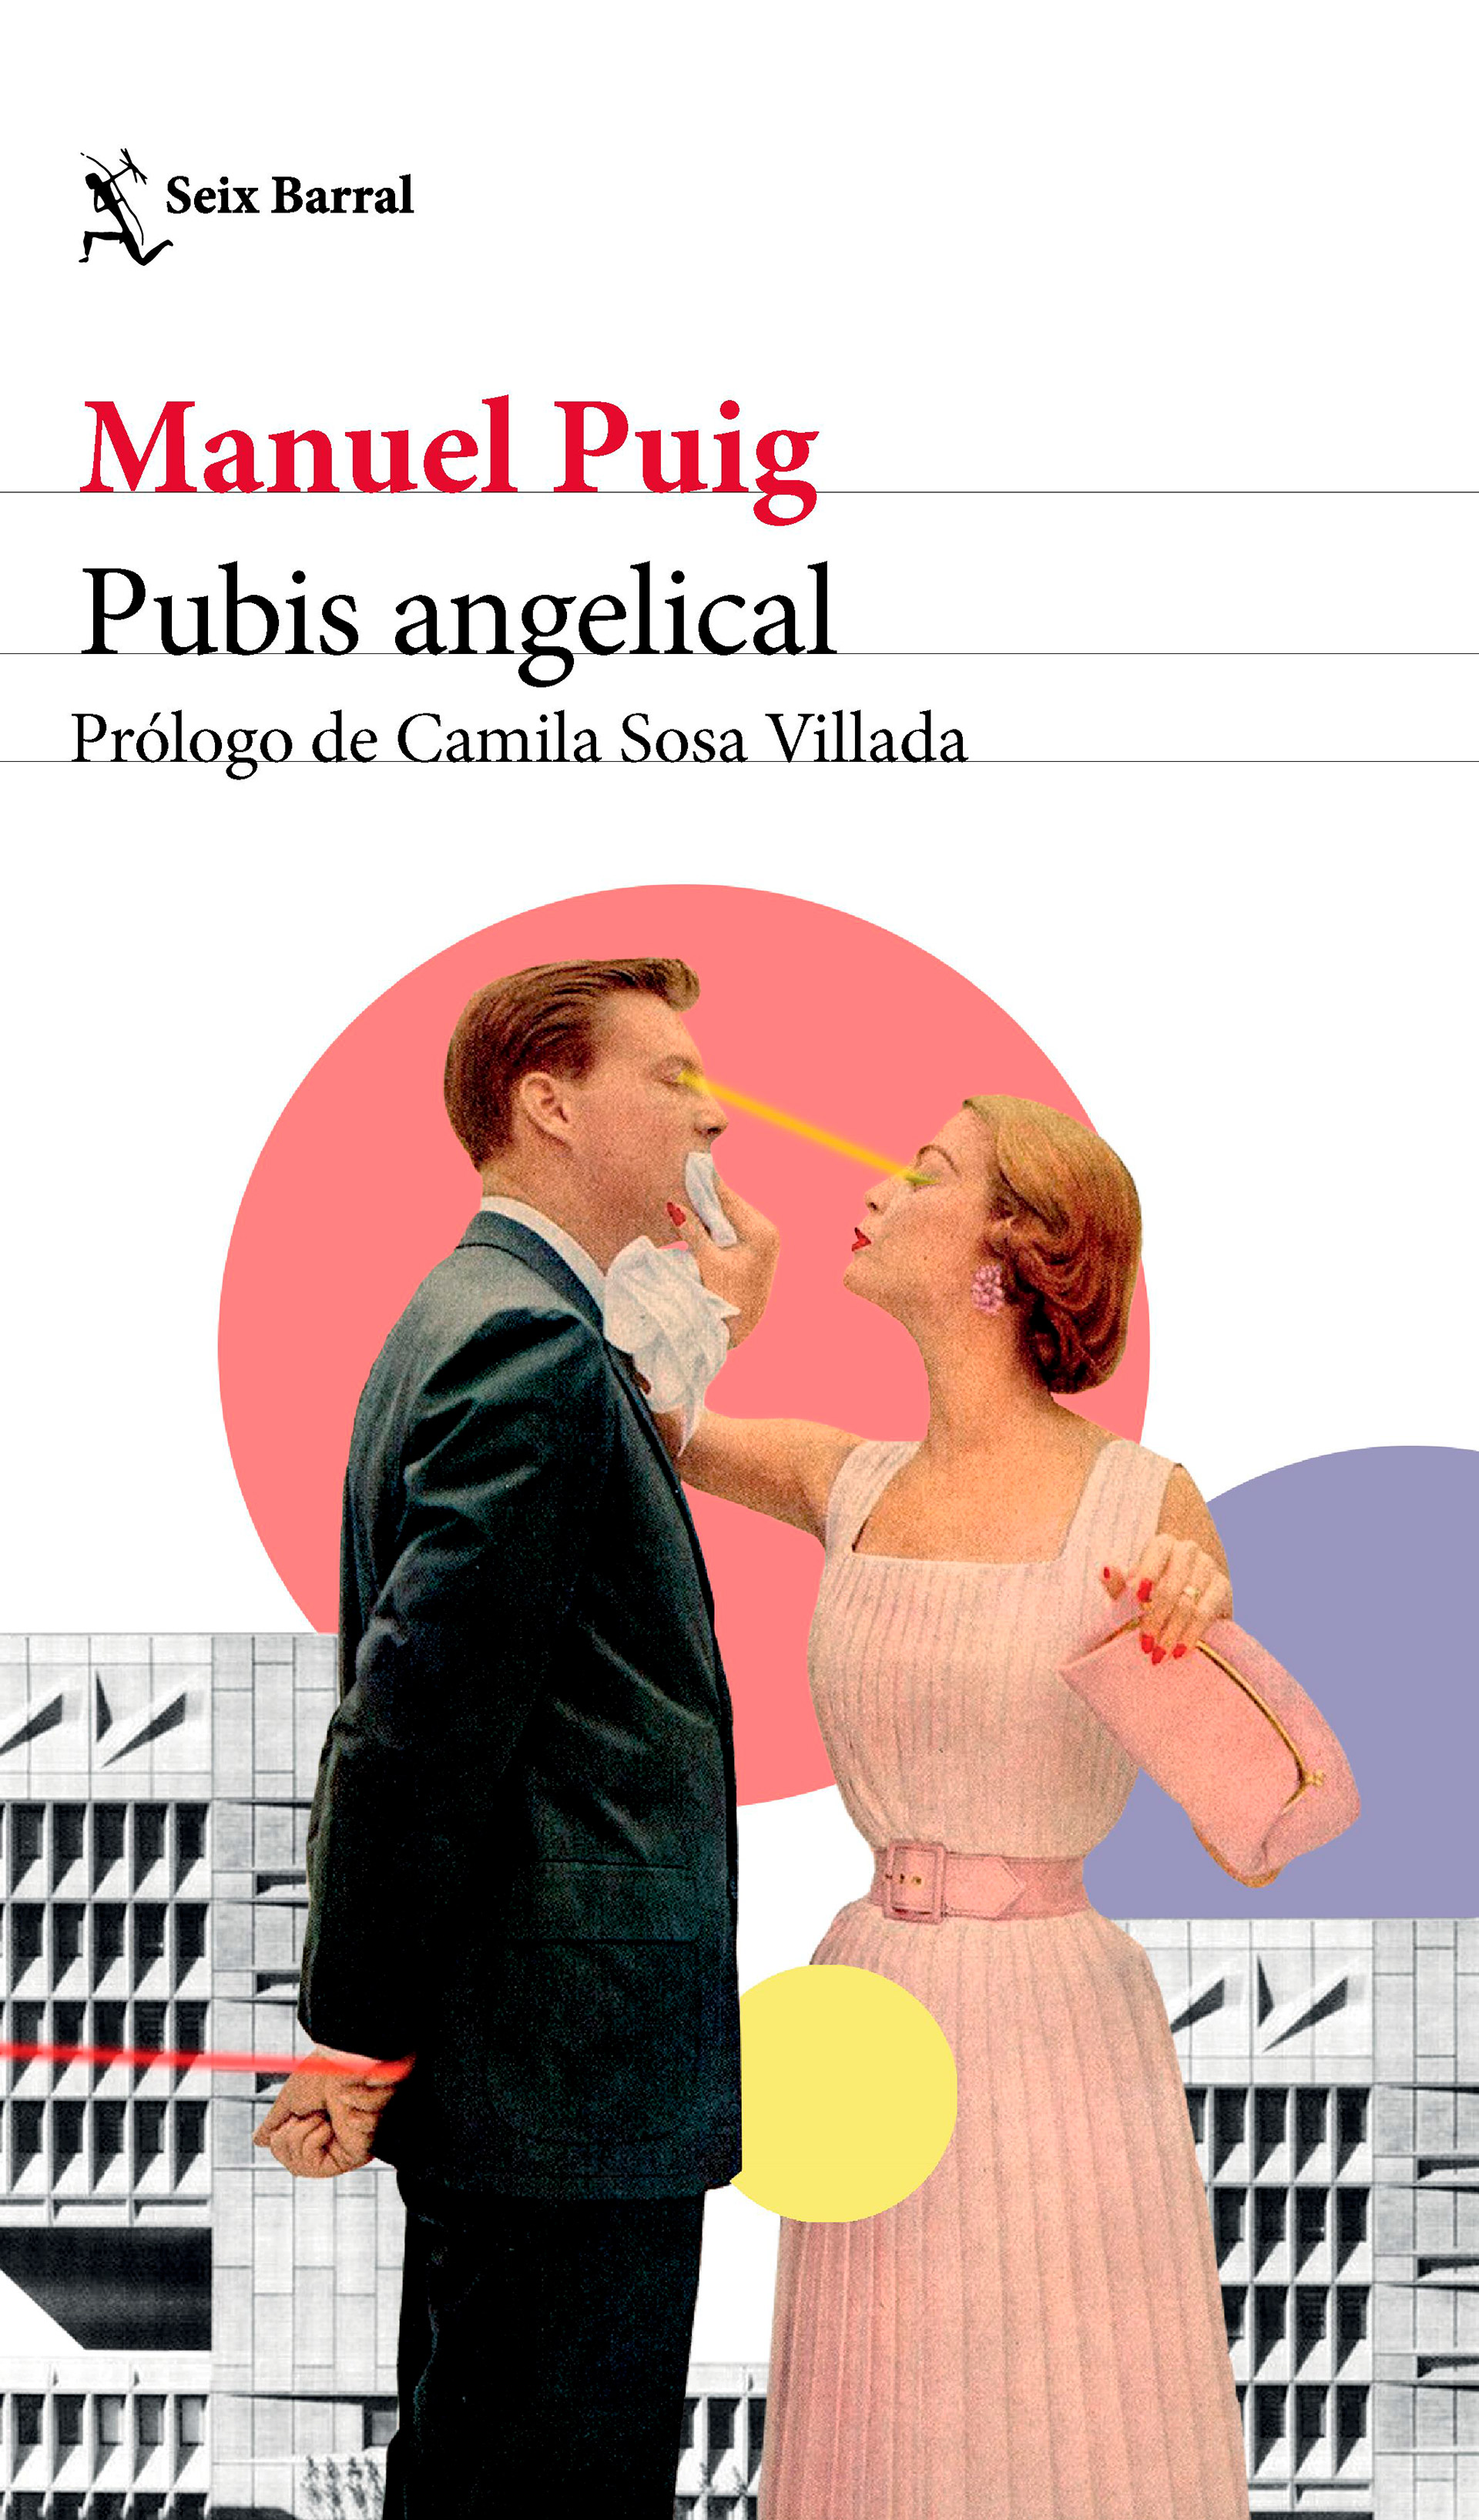 Prólogo de la nueva edición de "Pubis angelical" de Manuel Puig, publicada por Seix Barral con el prólogo de Camila Sosa Villada.